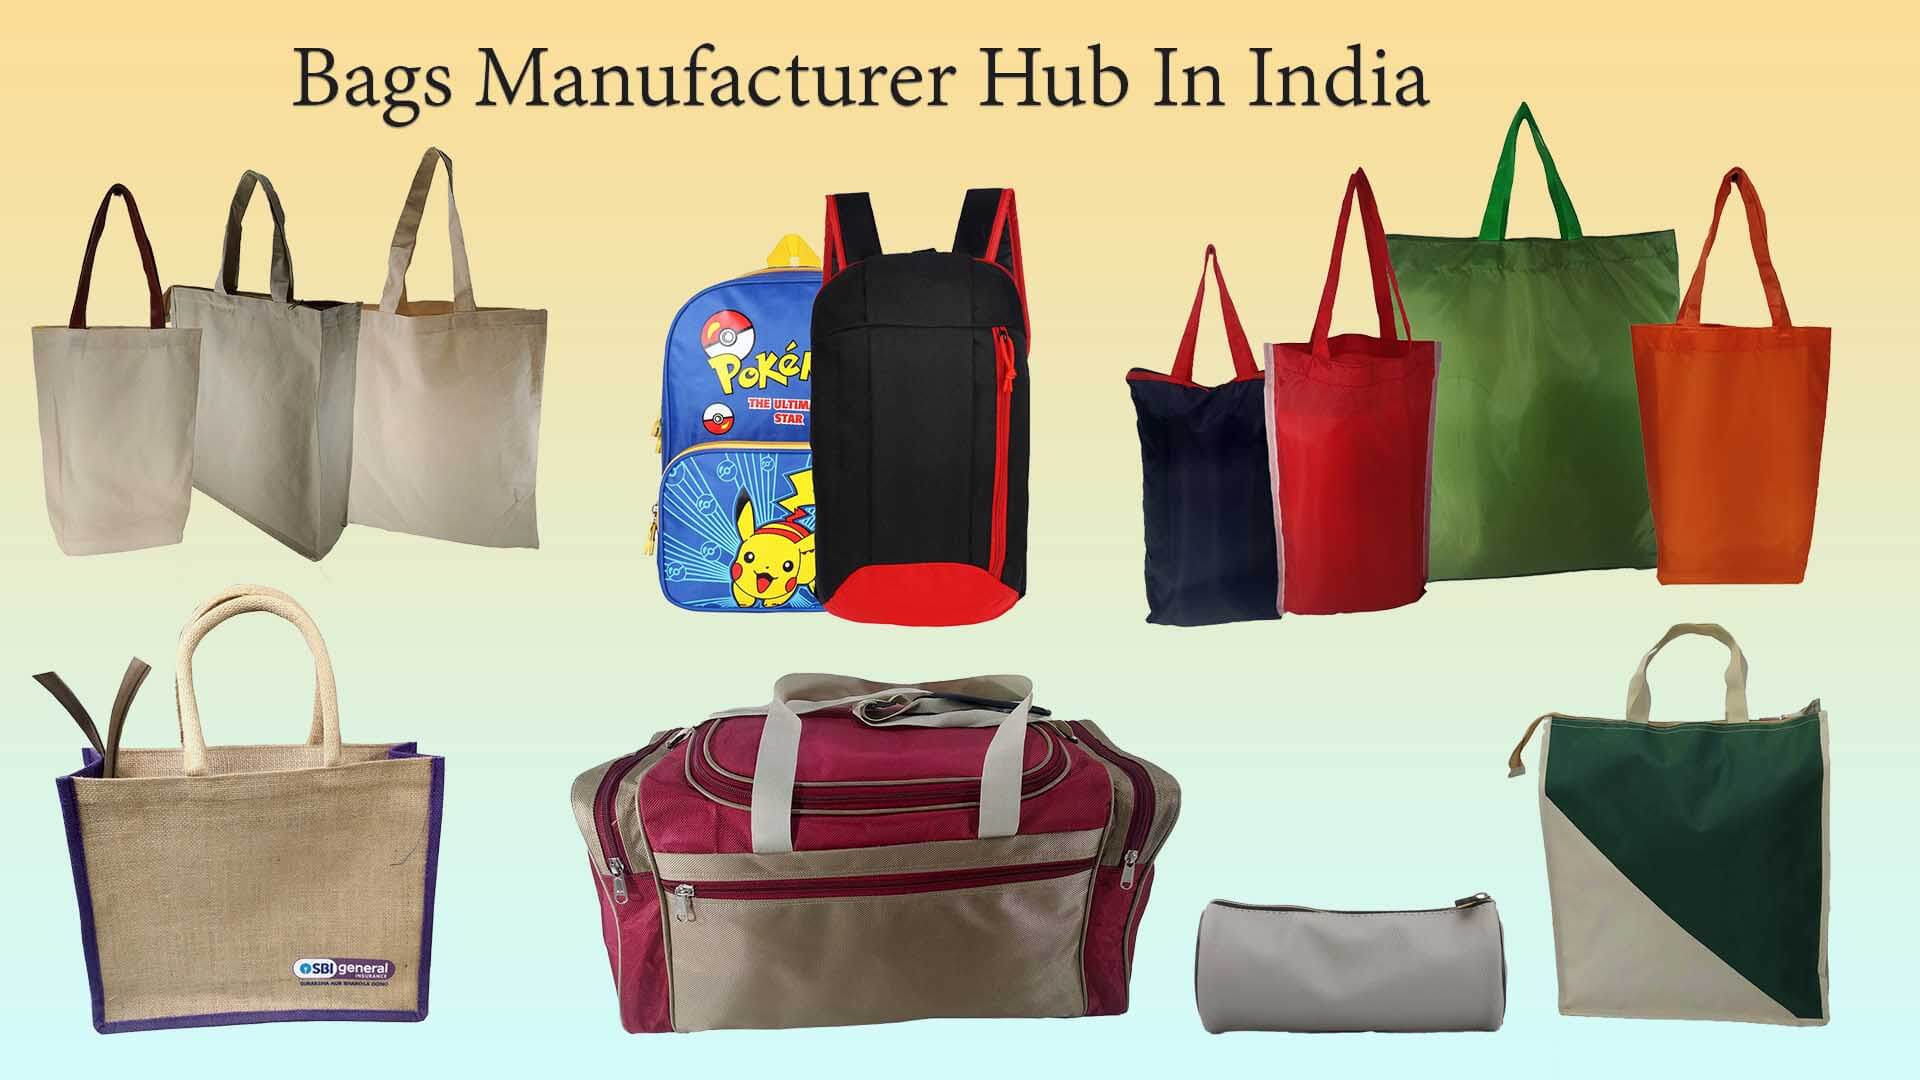 Top 7 des fabricants de sacs en Inde